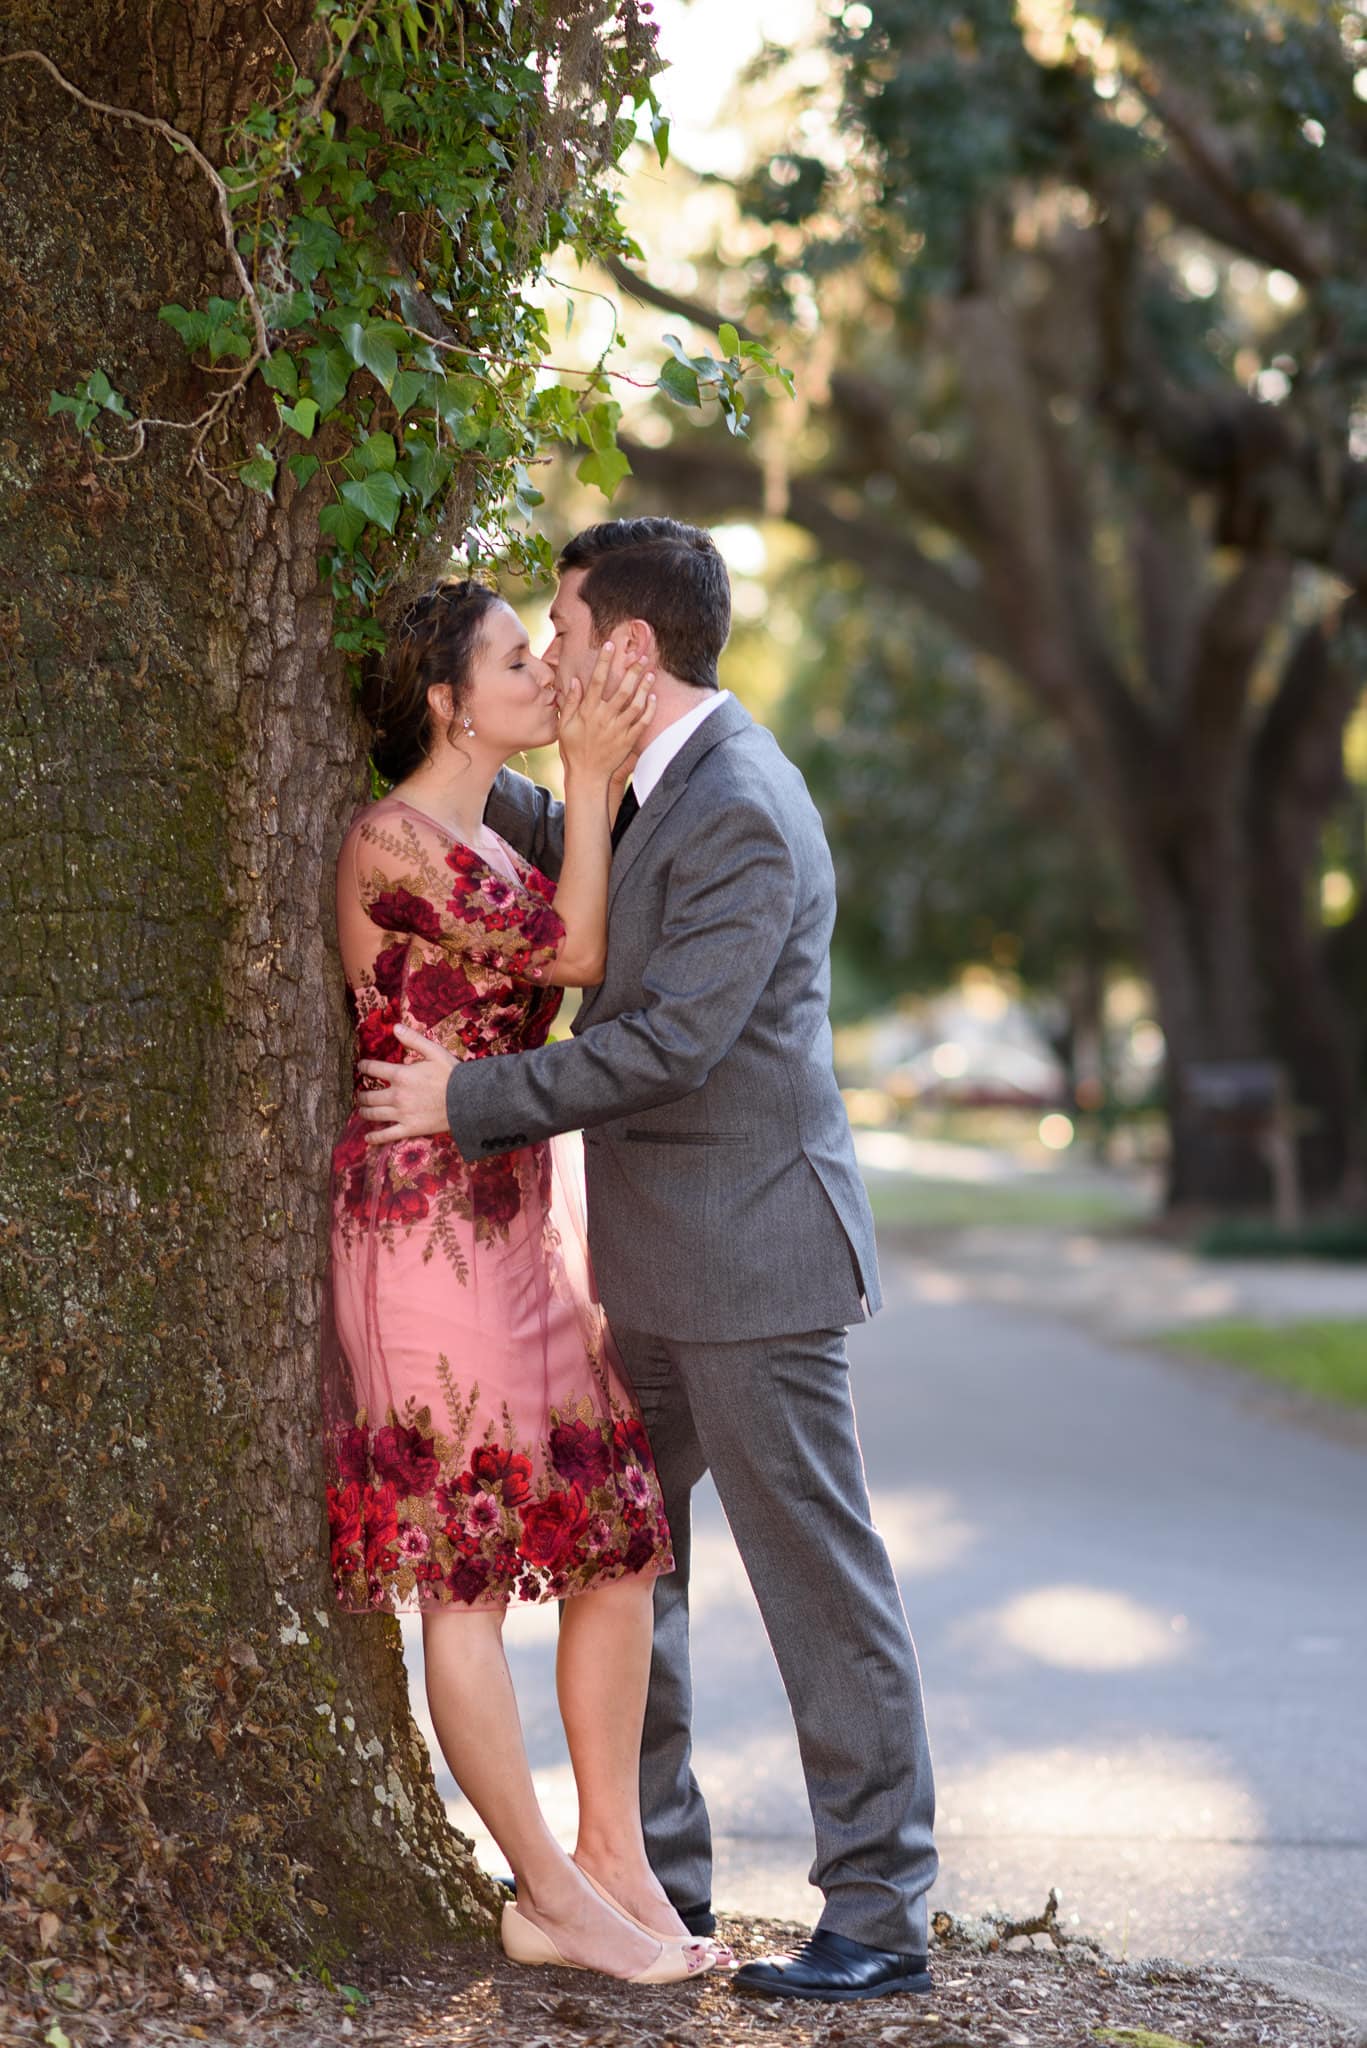 Kissing by the oak tree - Oak Street, Conway, SC